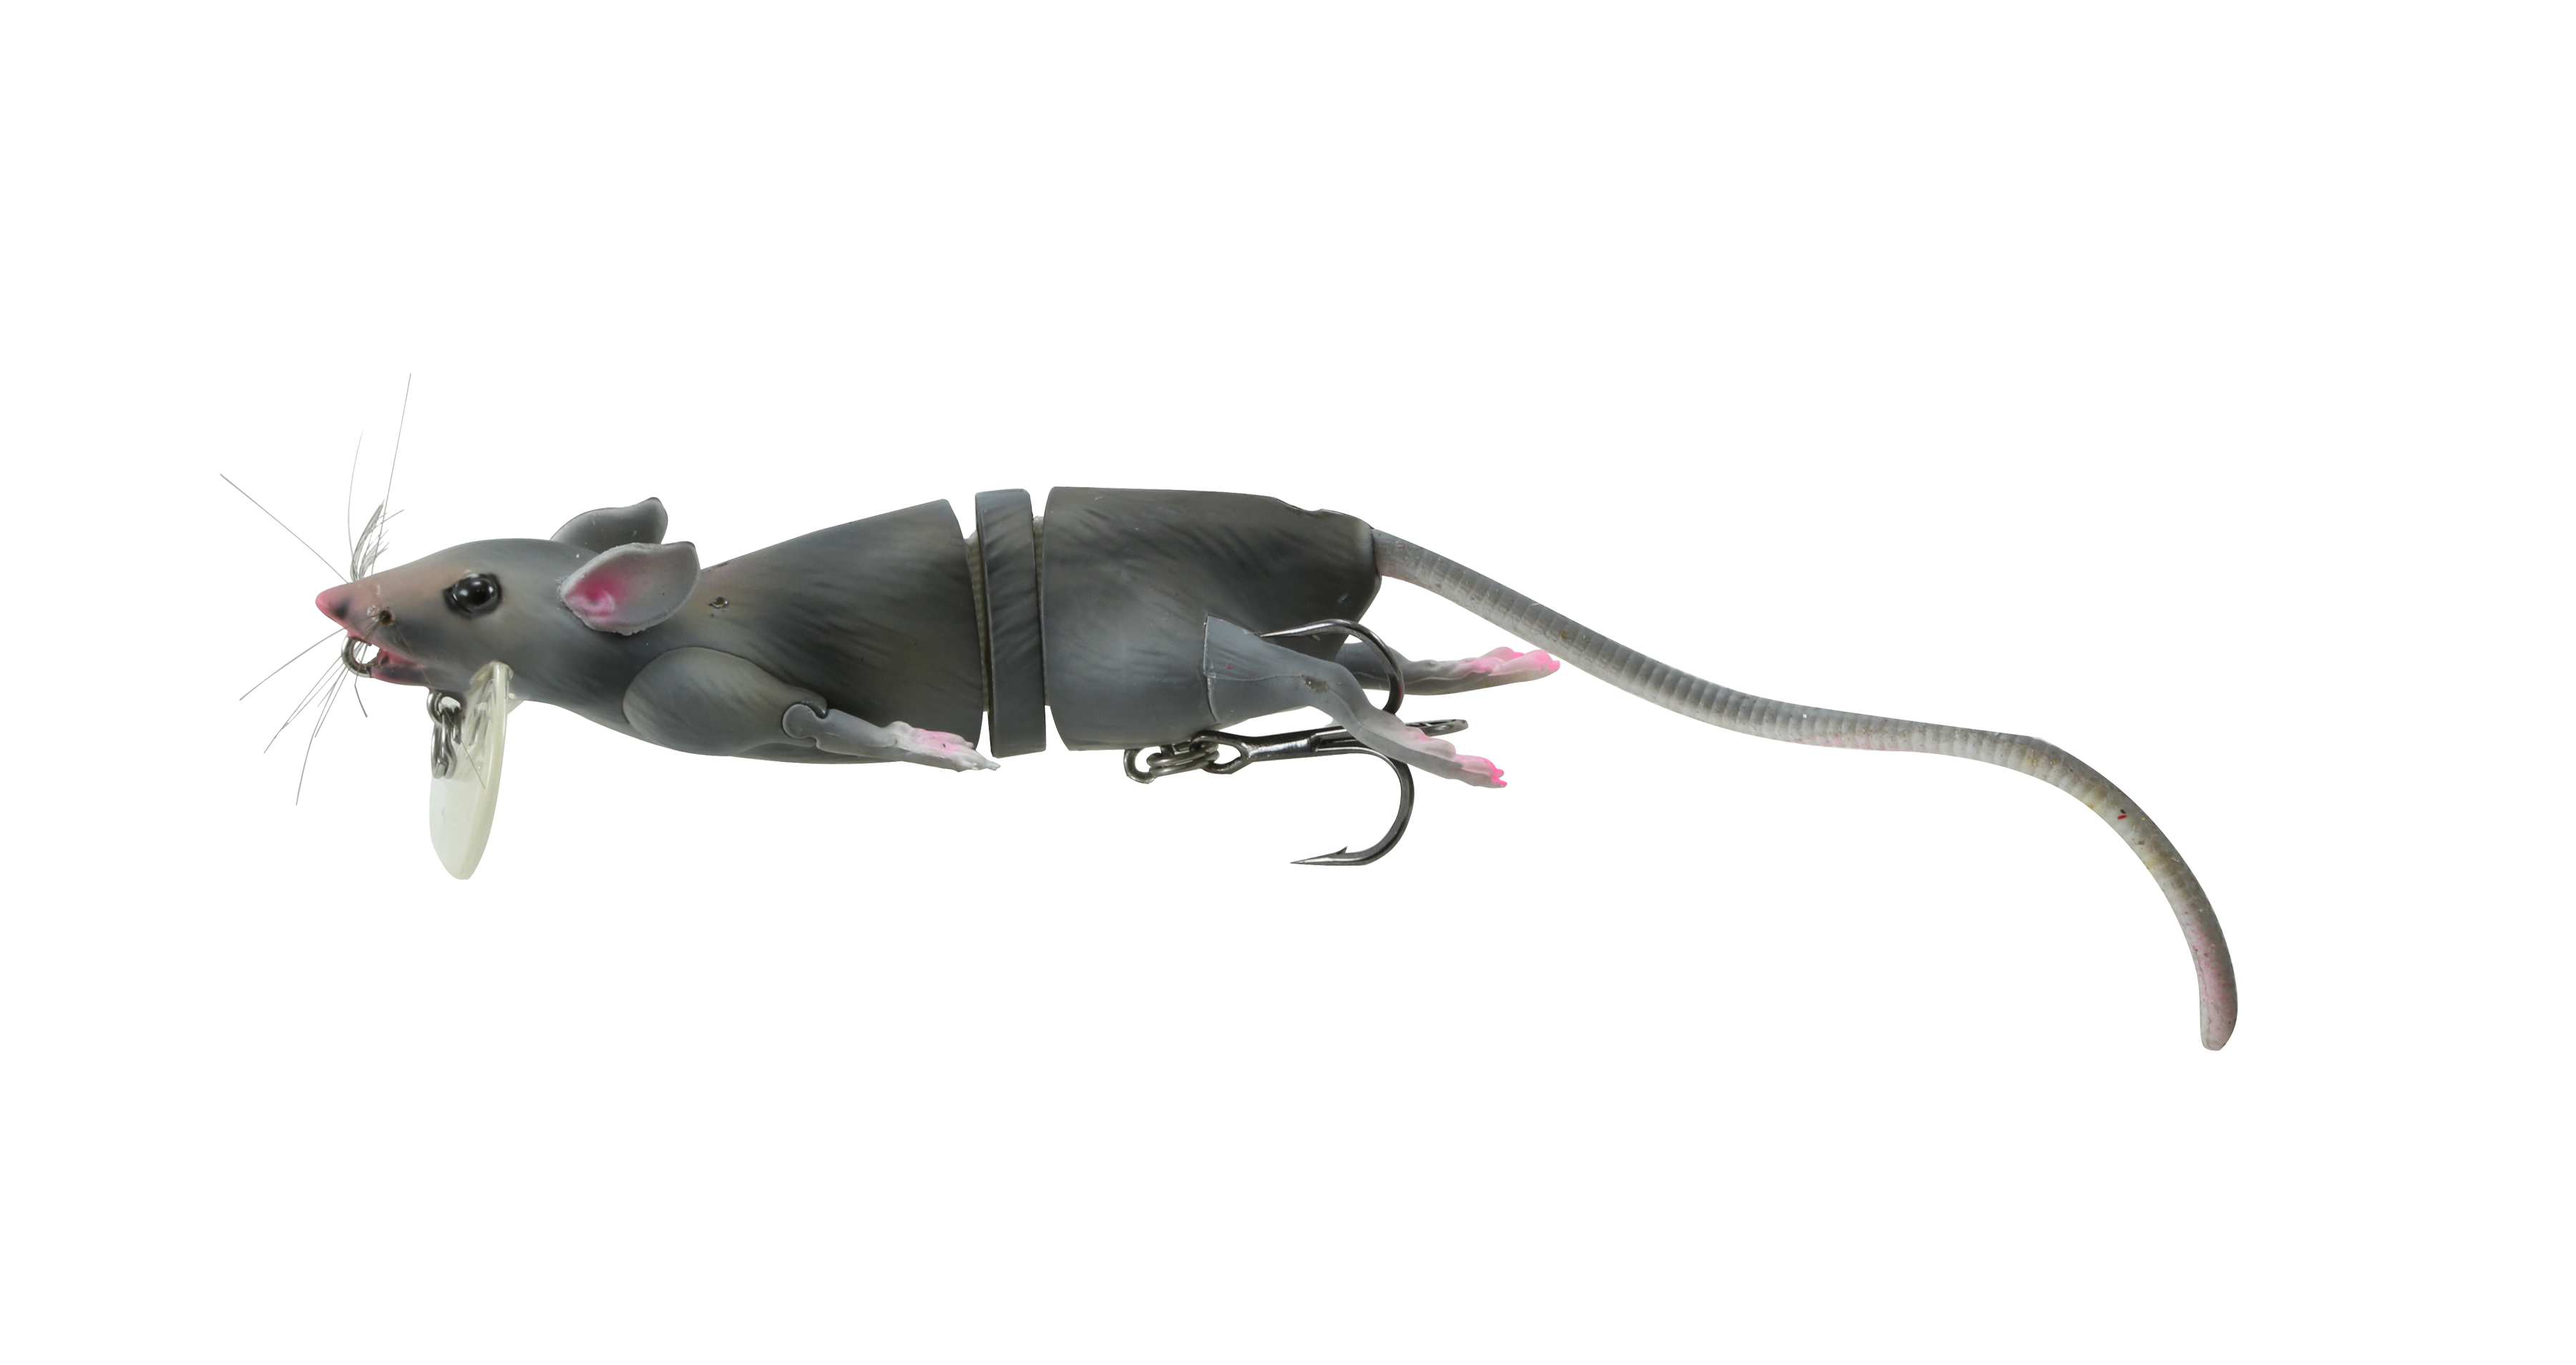  Savage Gear 3D Rad Rat Fishing Bait, 1/2 oz, Brown, Realistic  Contours, Colors & Movement, Durable Construction, Versatile Rigging  Options, Dual Treble Hook Configuration : Sports & Outdoors